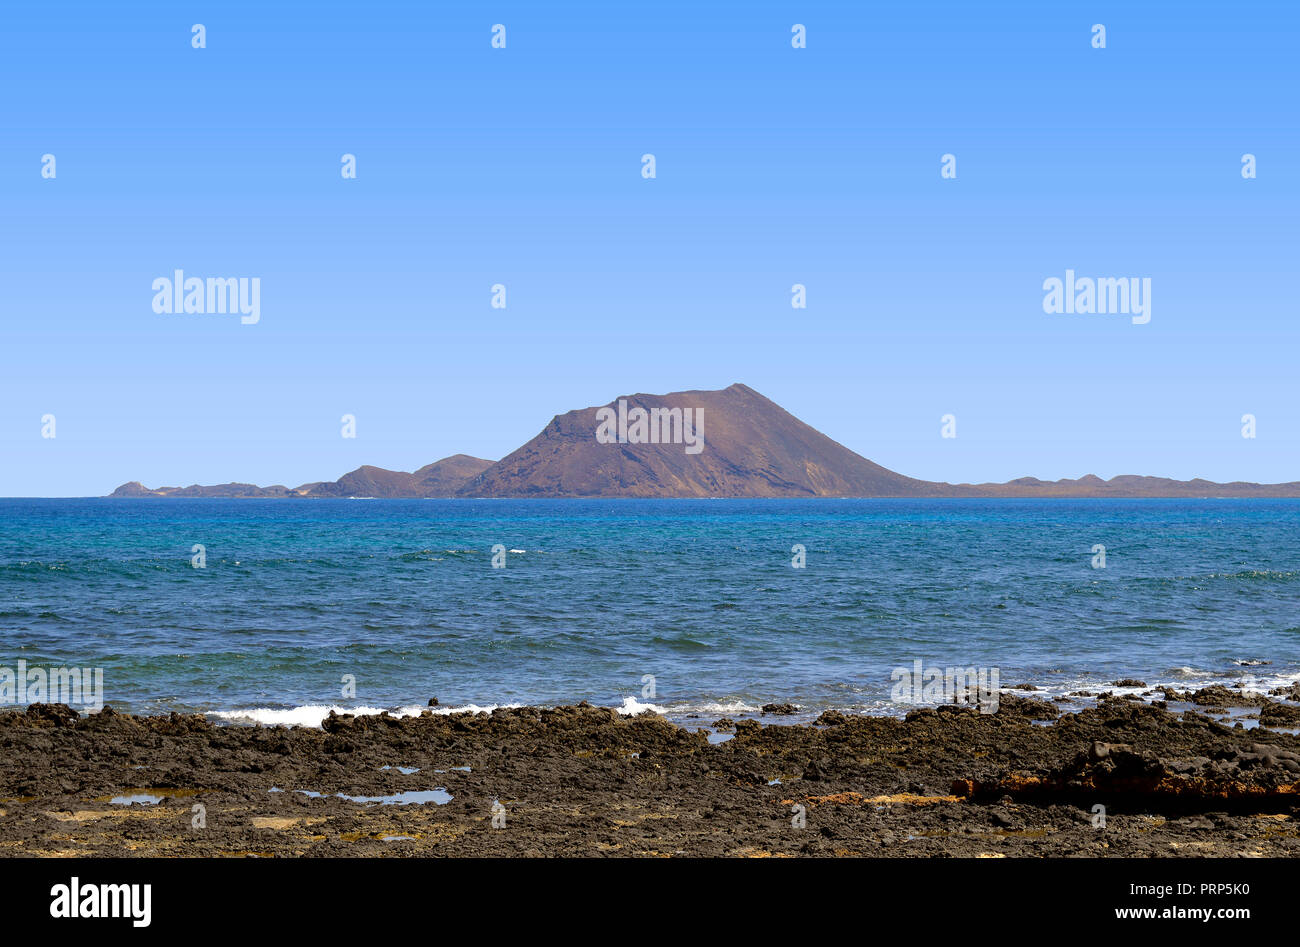 Isla de Lobos eine volcamic insland vor der Küste von Fuerteventura, eine der Kanarischen Inseln Stockfoto